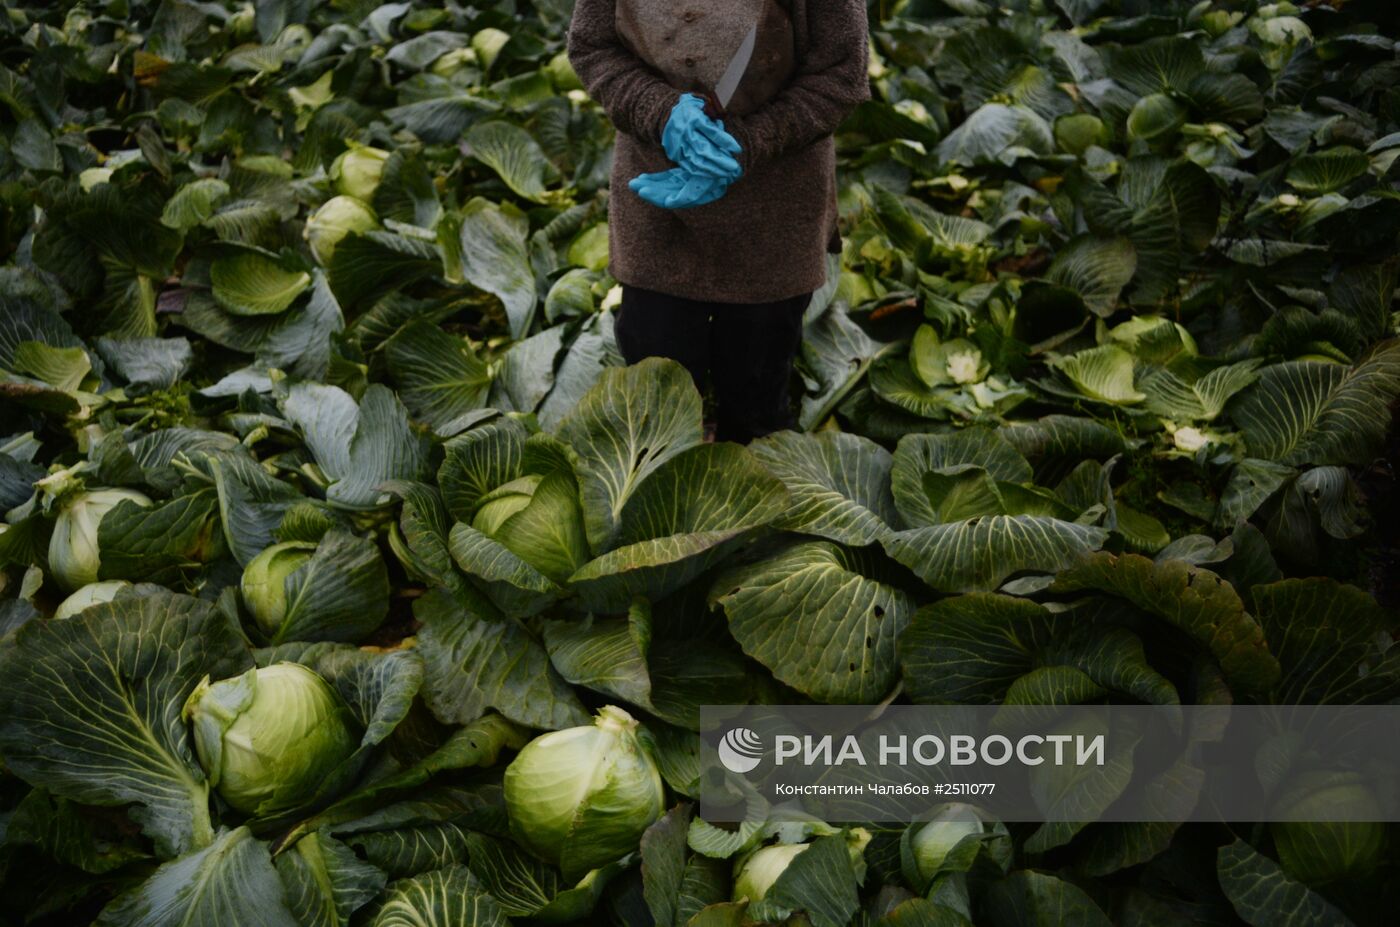 Уборка капусты в Новгородской области